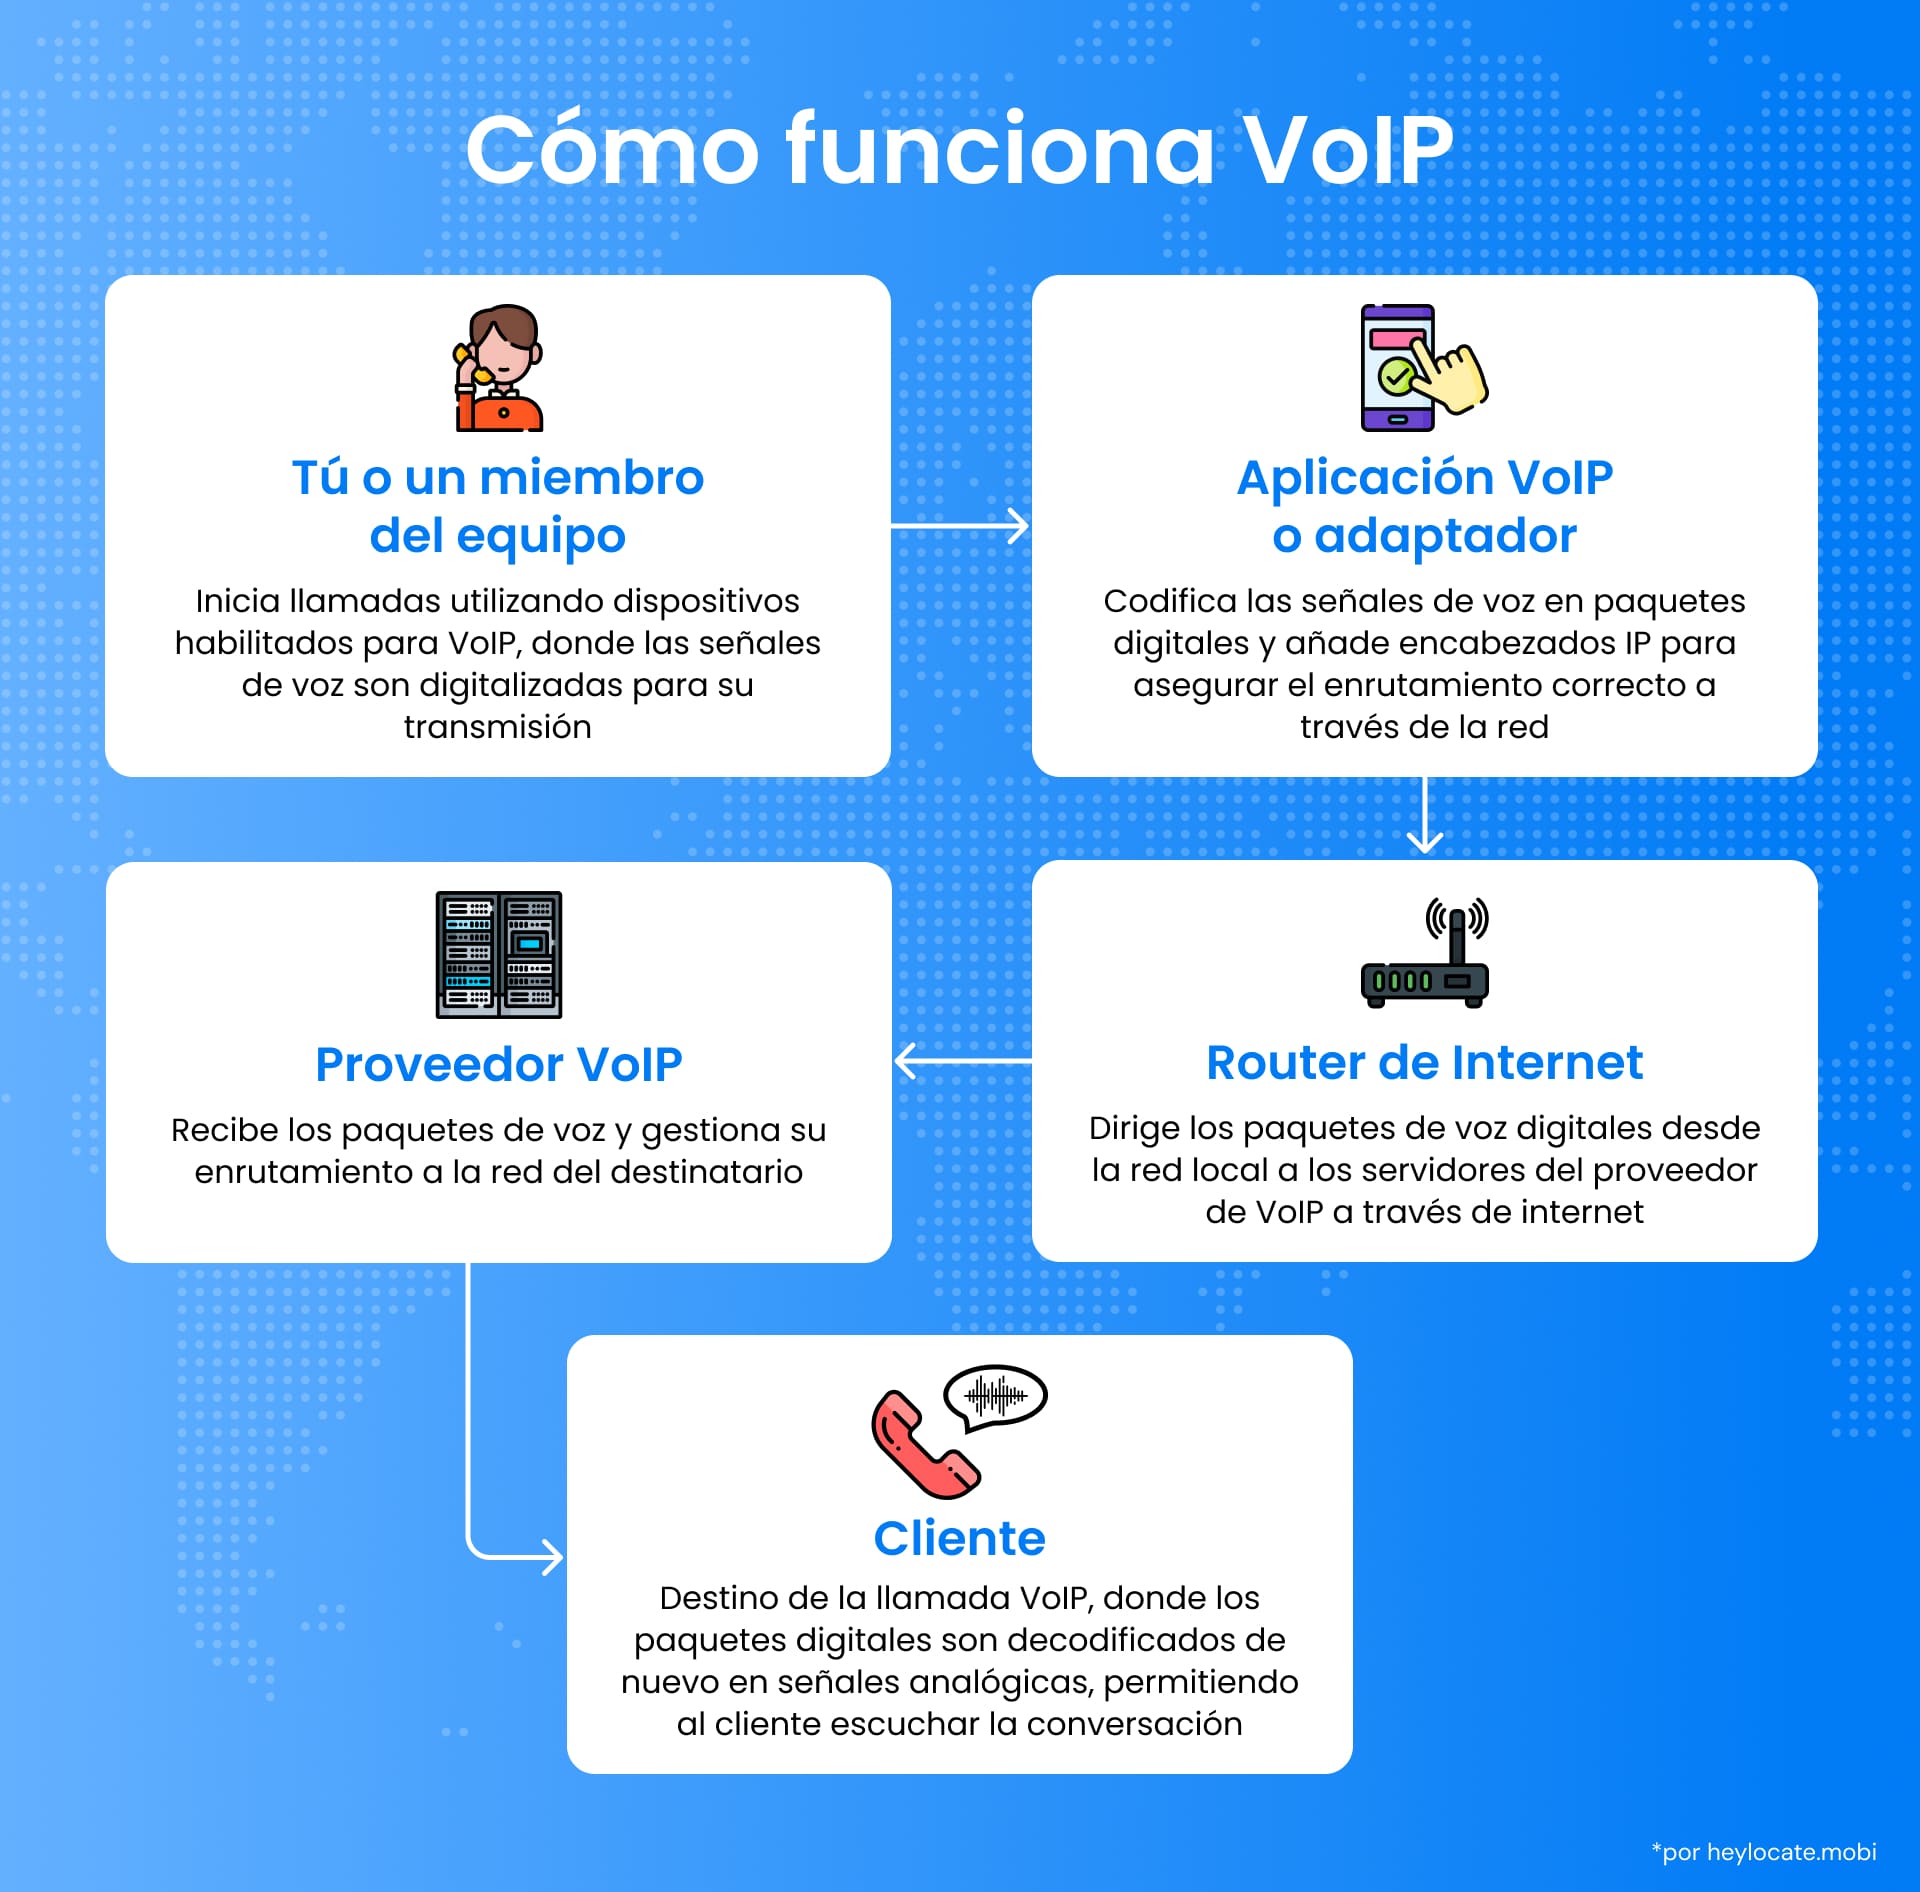 Diagrama que ilustra el proceso de una llamada de Voz sobre Protocolo de Internet (VoIP). Muestra al usuario iniciando la llamada, la aplicación o adaptador VoIP codificando las señales de voz, la transmisión de datos a través de un router de Internet, la gestión por parte del proveedor VoIP y la recepción final por parte del cliente.